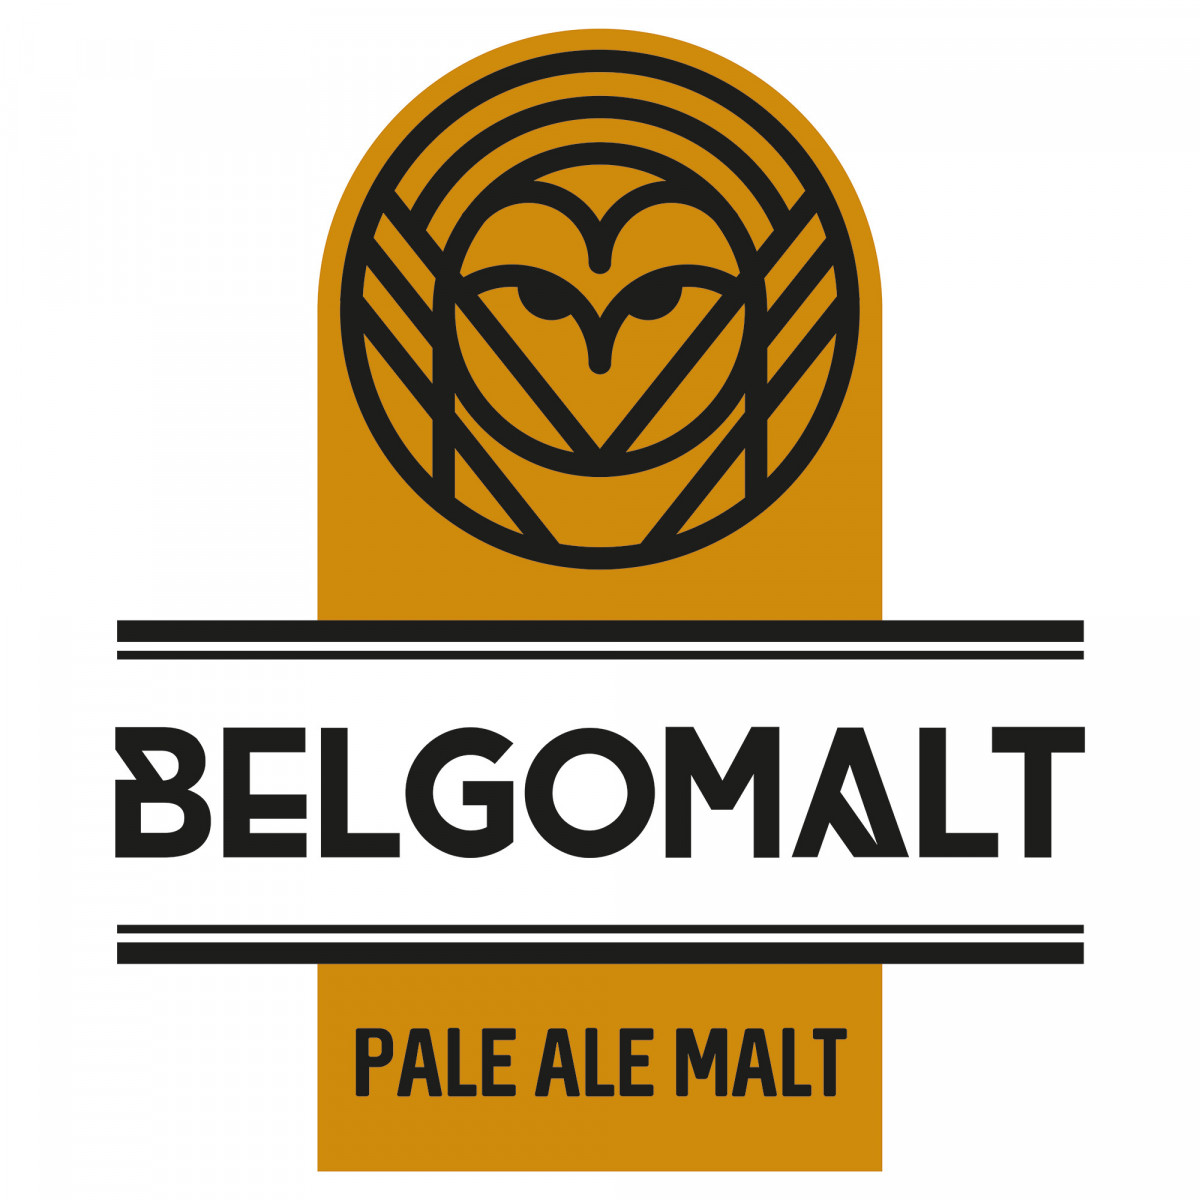 Belgomalt Pale Ale 5 - 7 EBC 5 kg